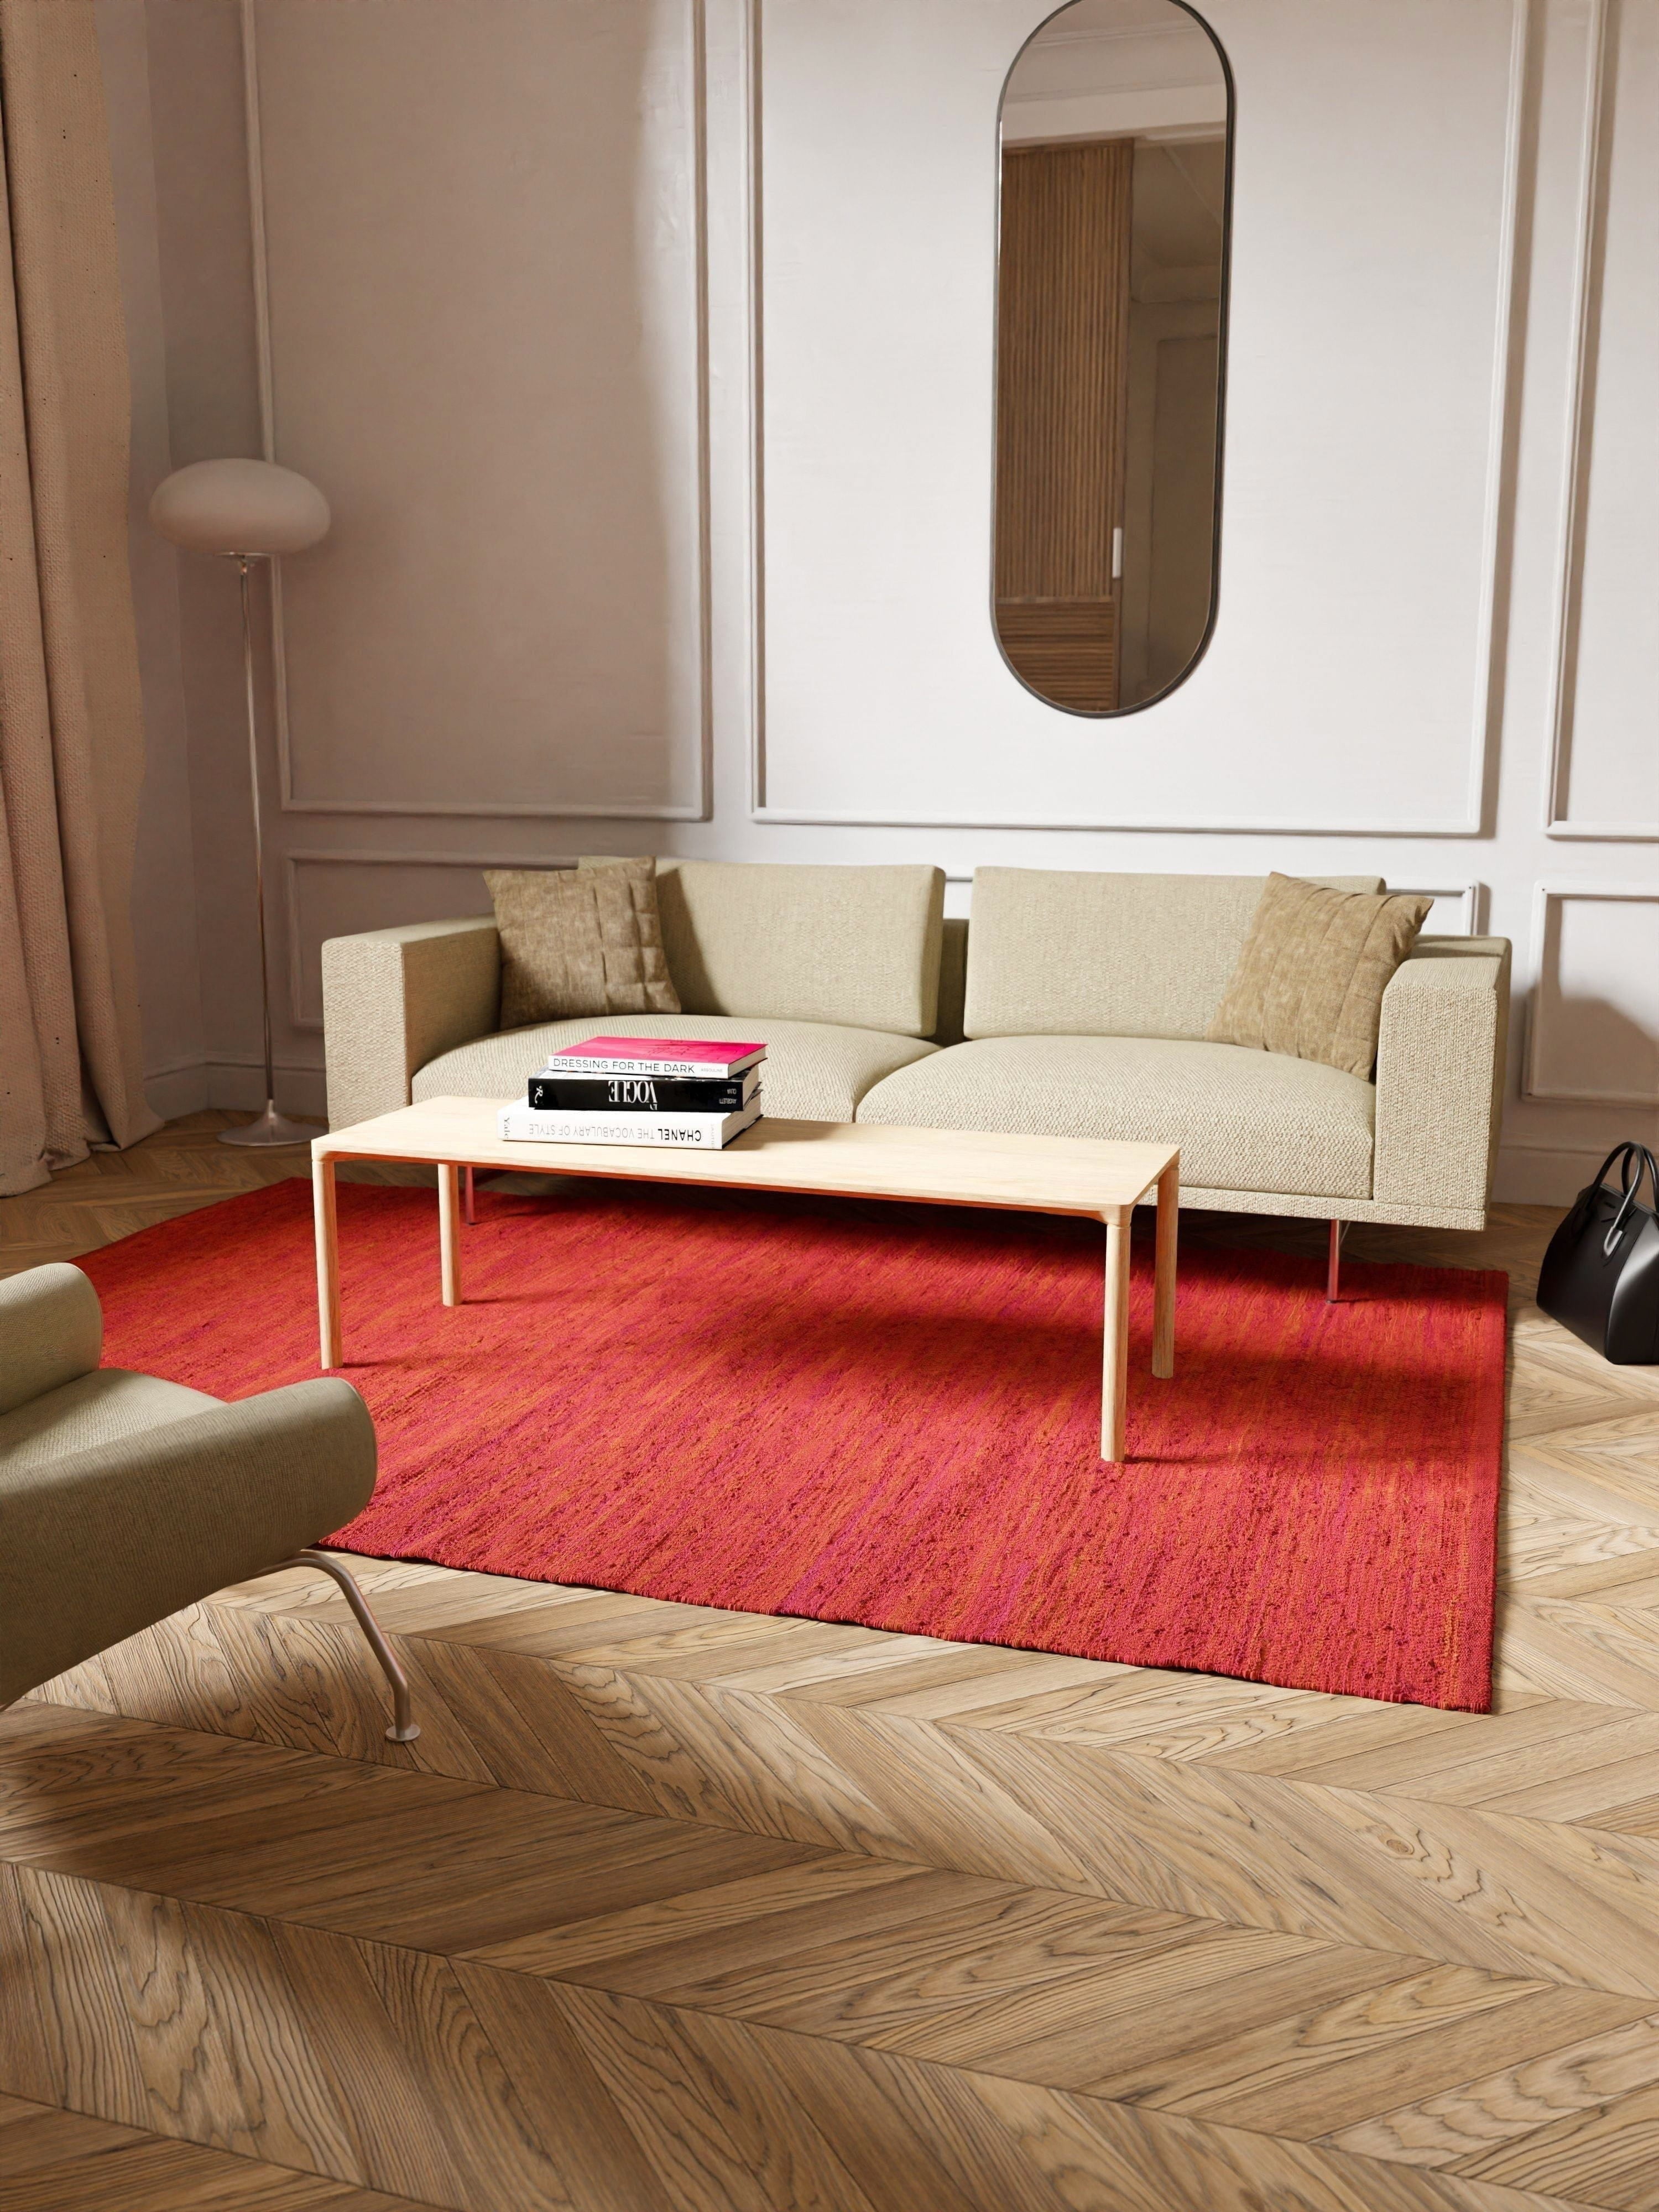 Koberec s pevným bavlněným koberec 65 x 135 cm, jahodové